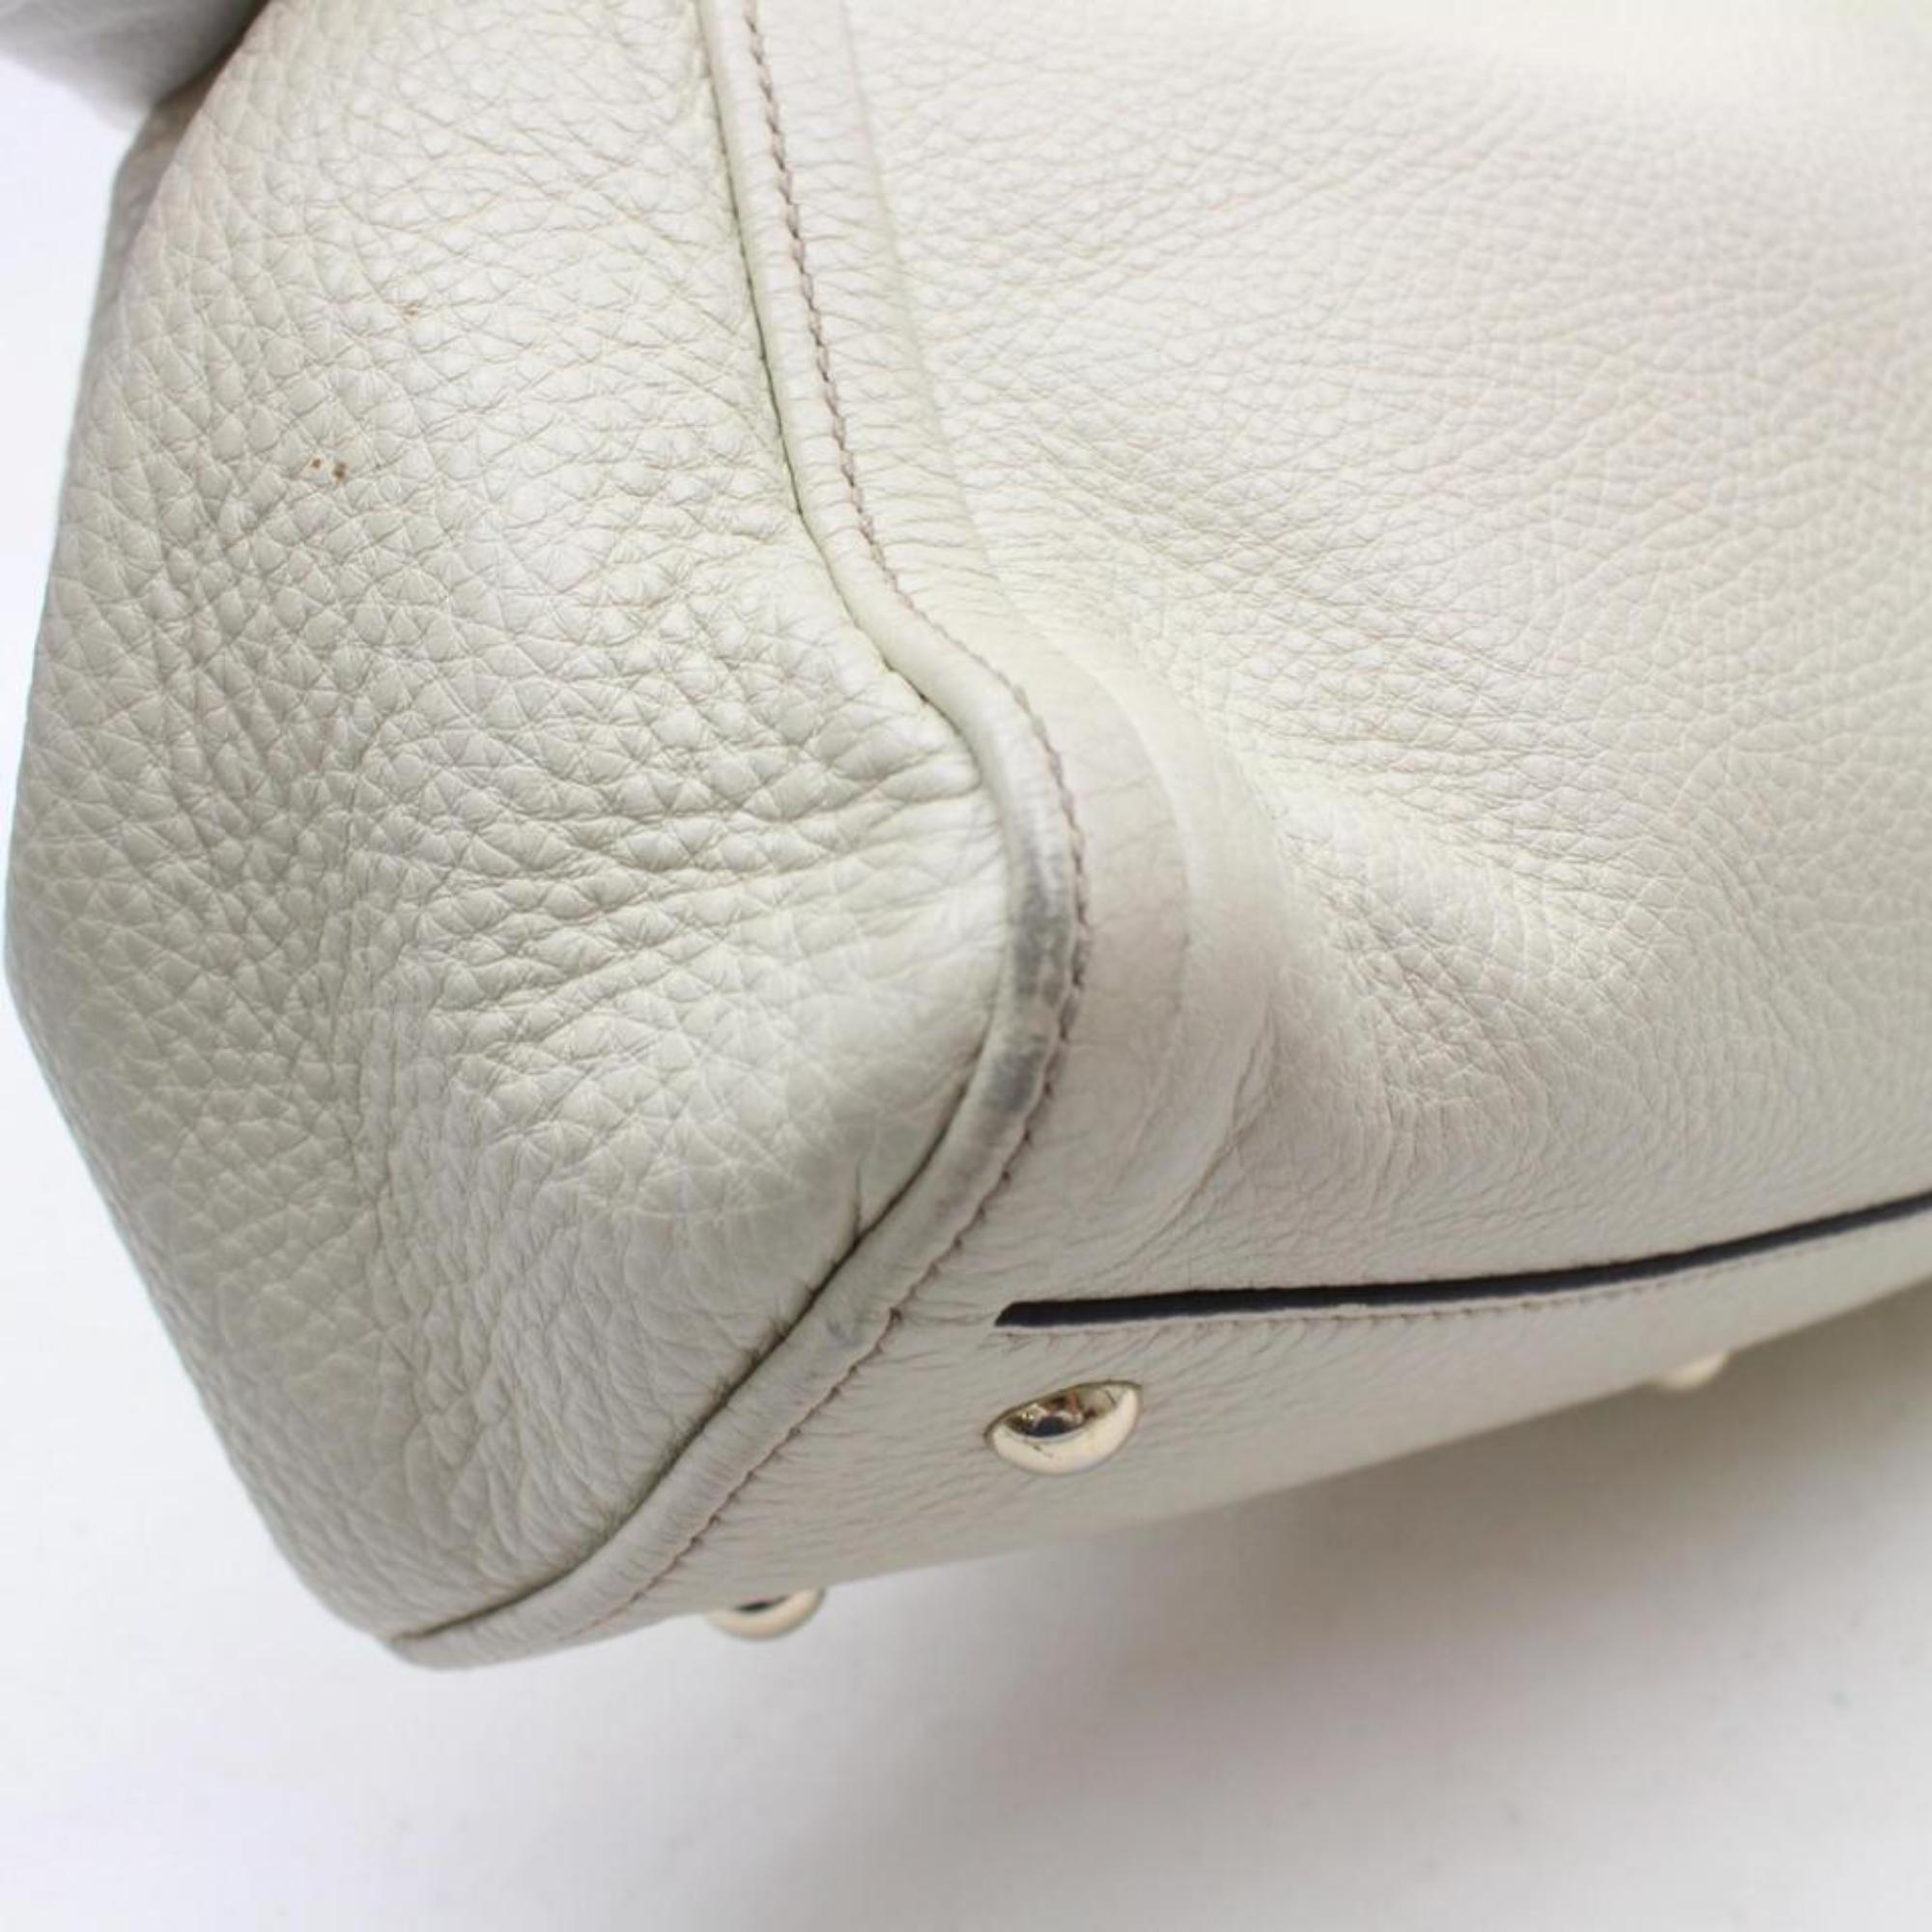 Gucci Soho Convertible Fringe Tassel 868948 Cream Leather Shoulder Bag For Sale 1